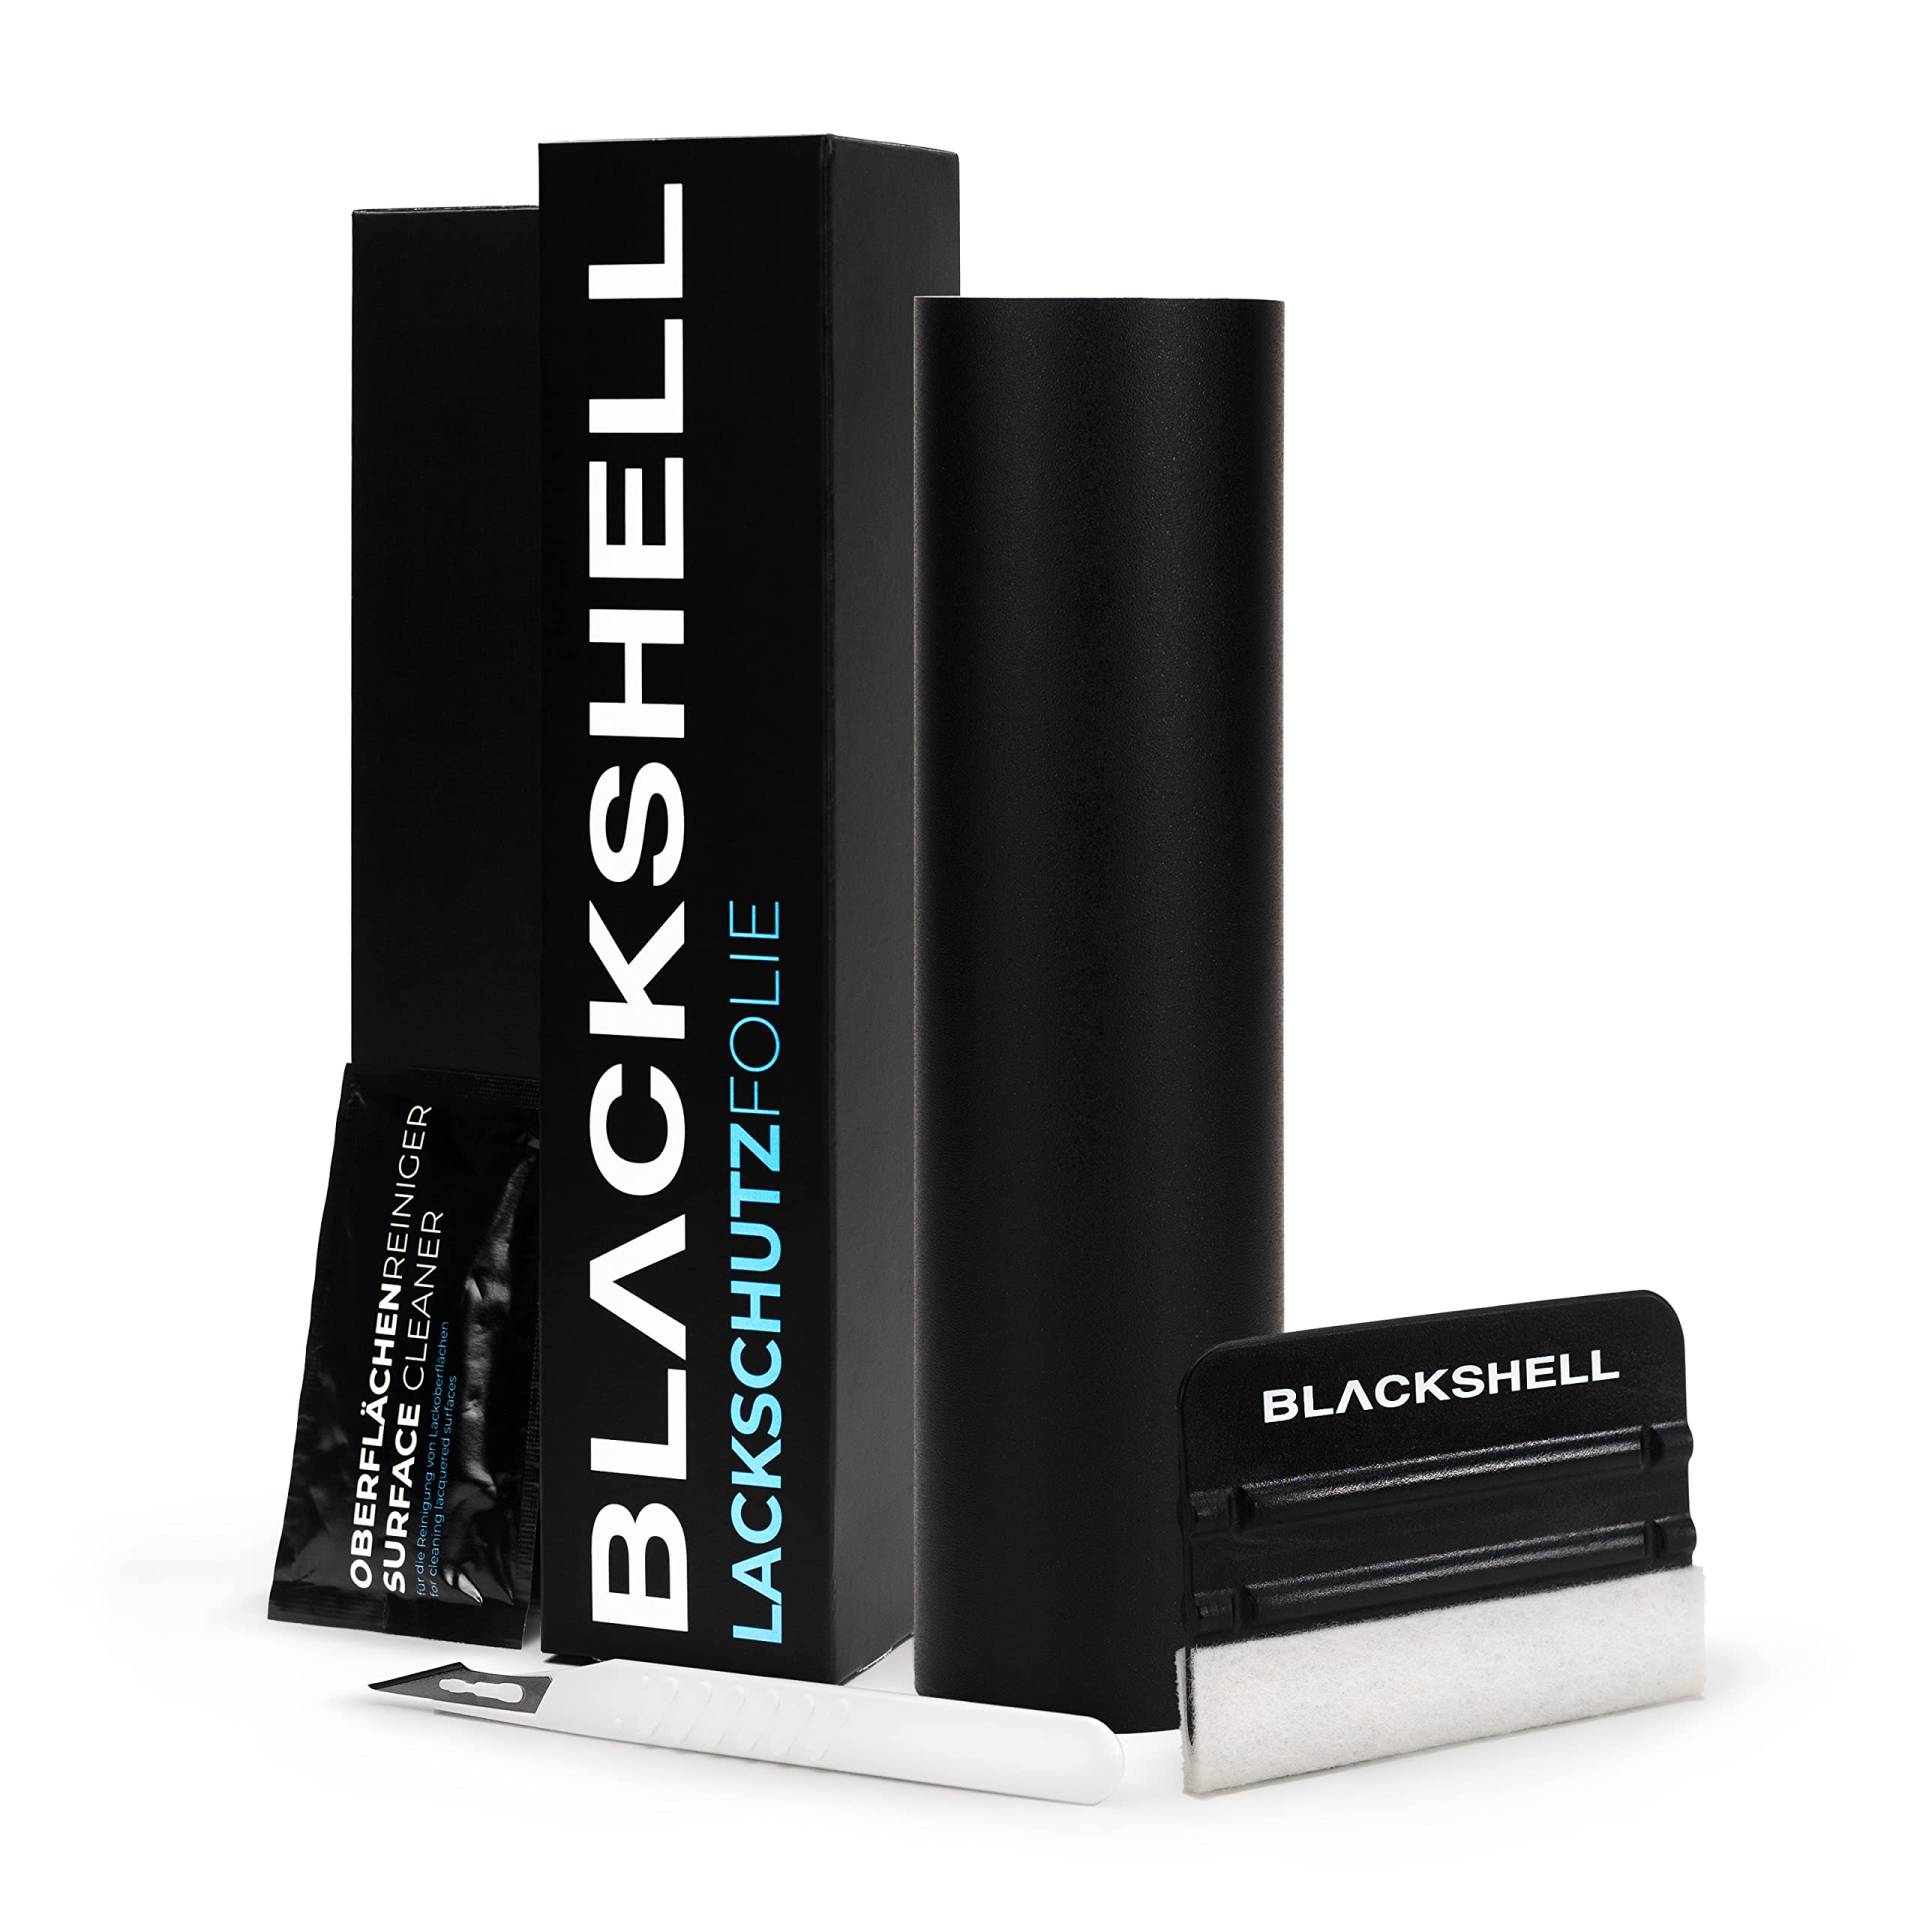 Blackshell® Universal Lackschutzfolie schwarz matt, Folie selbstklebend - universal einsetzbar auf allen glatten Oberflächen - individuelle Größenauswahl von Blackshell